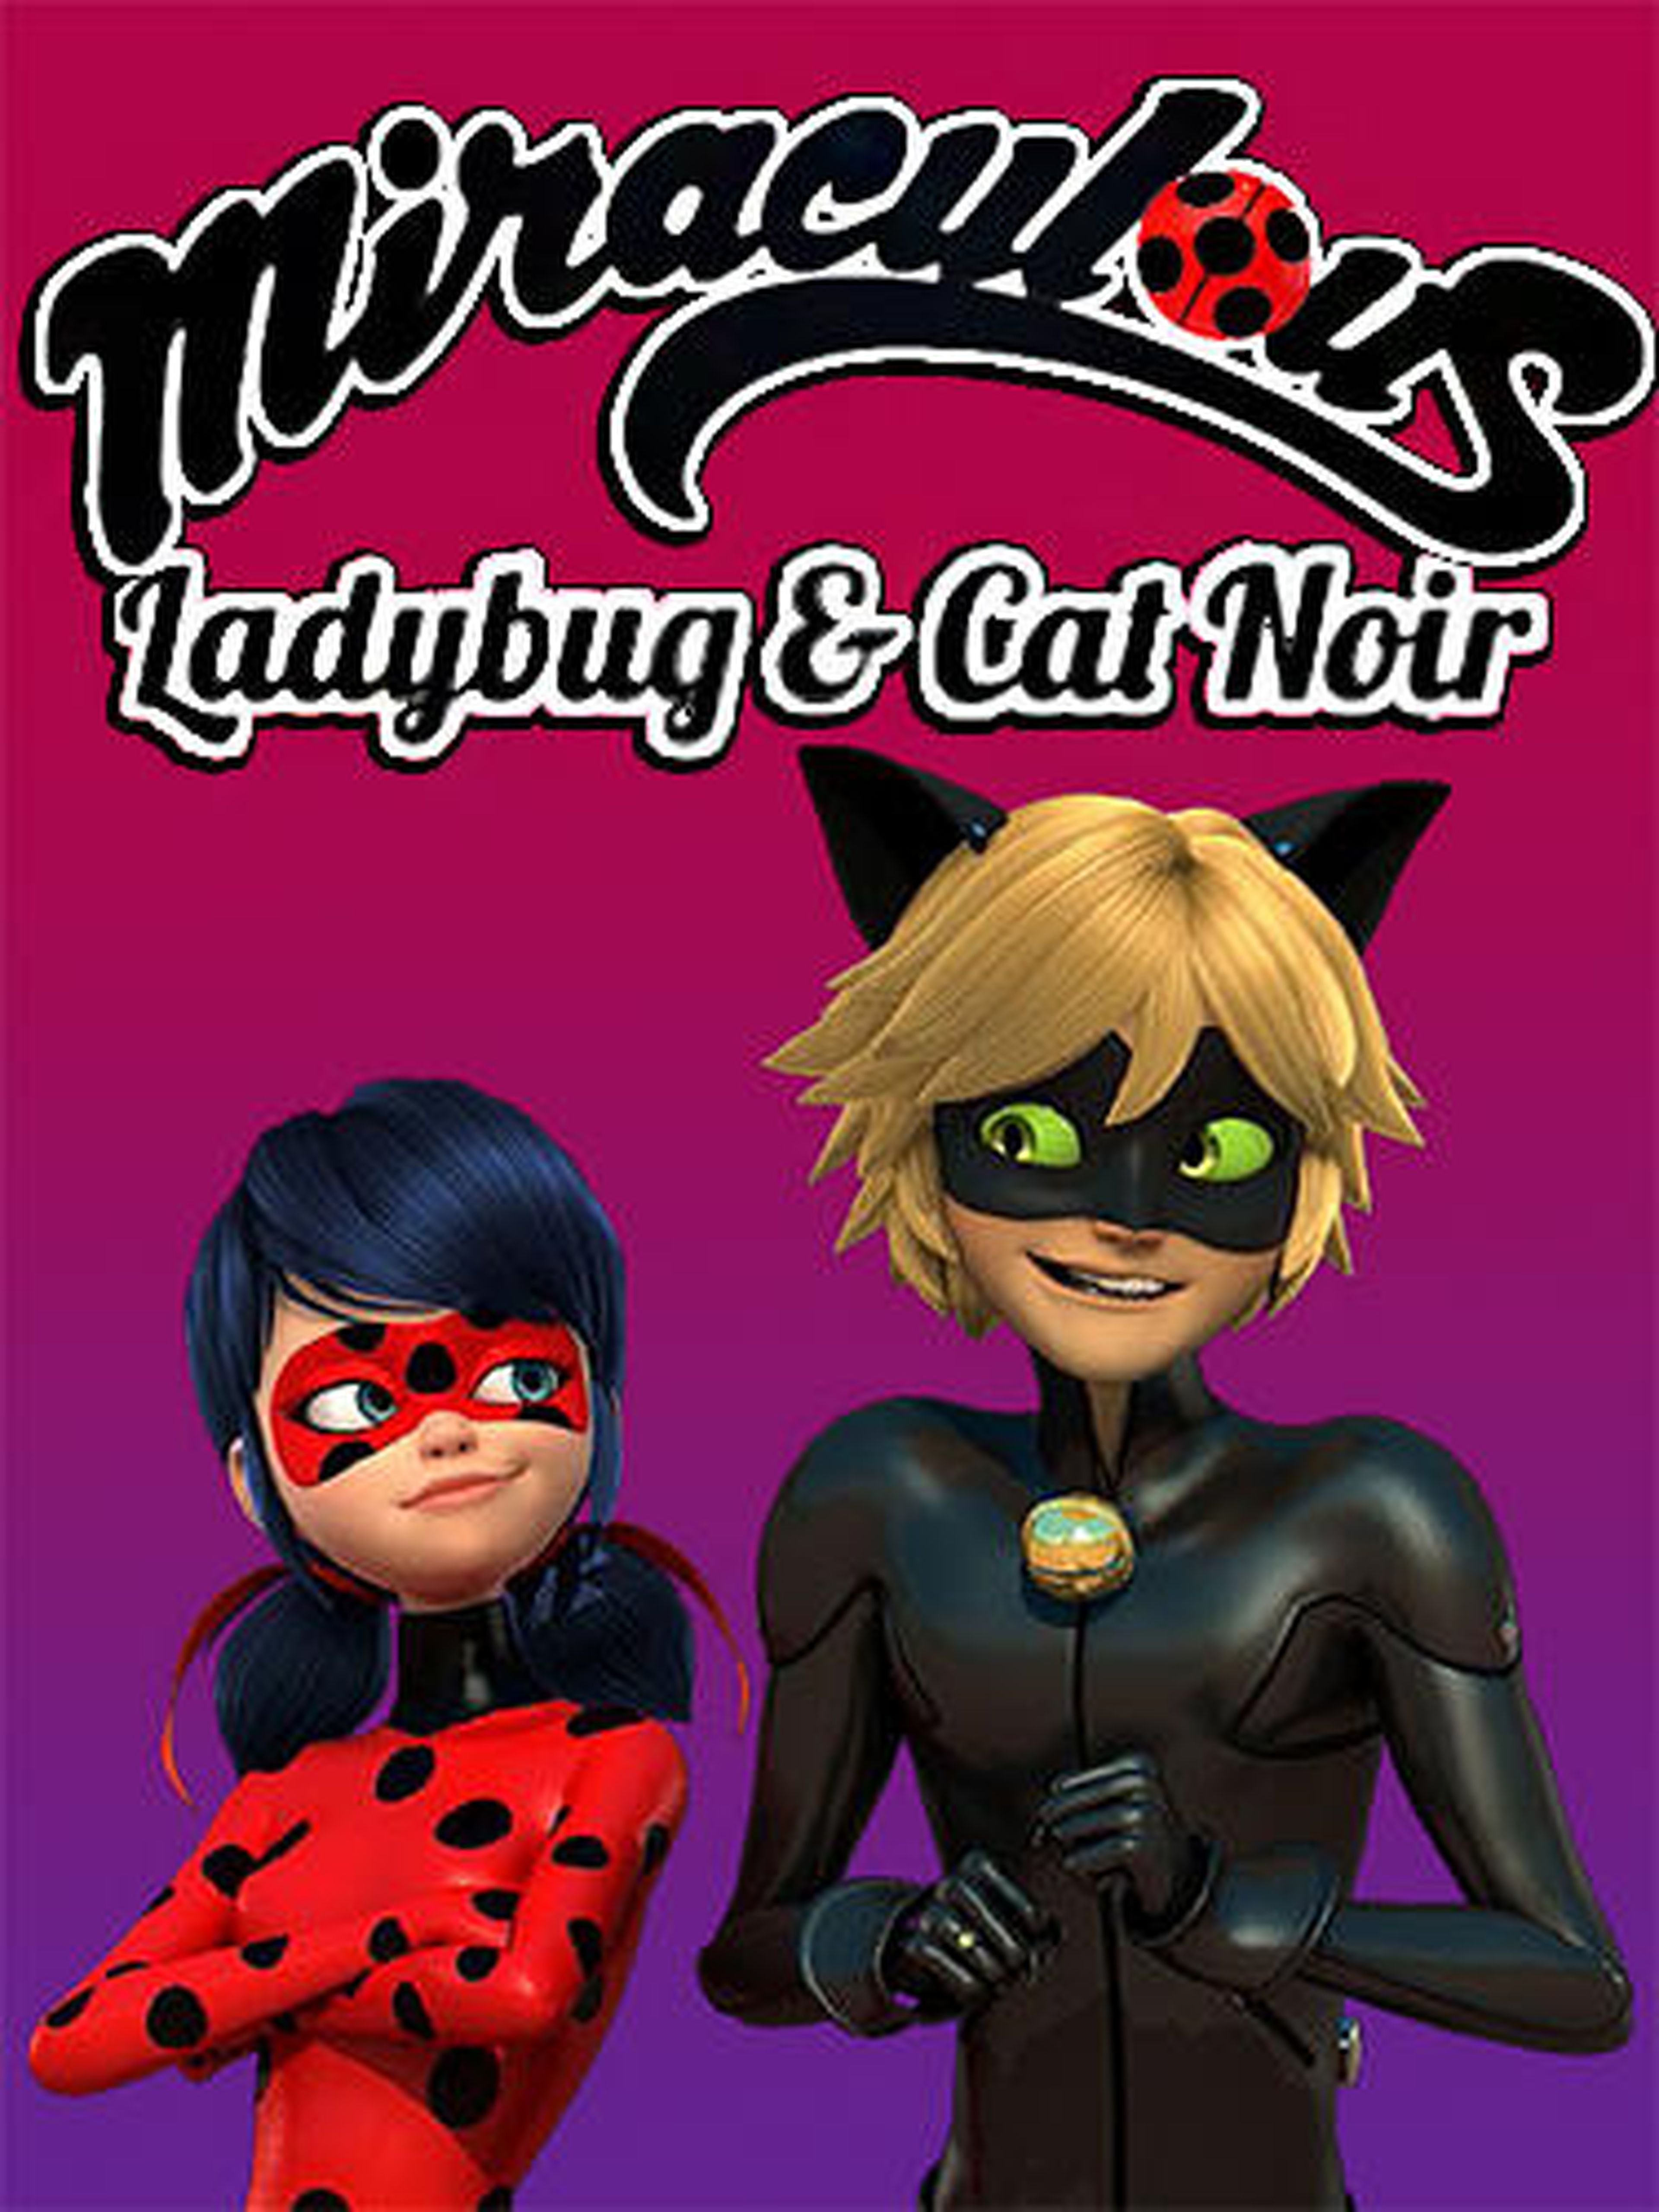 miraculous ladybug y cat noir, el juego oficial cover